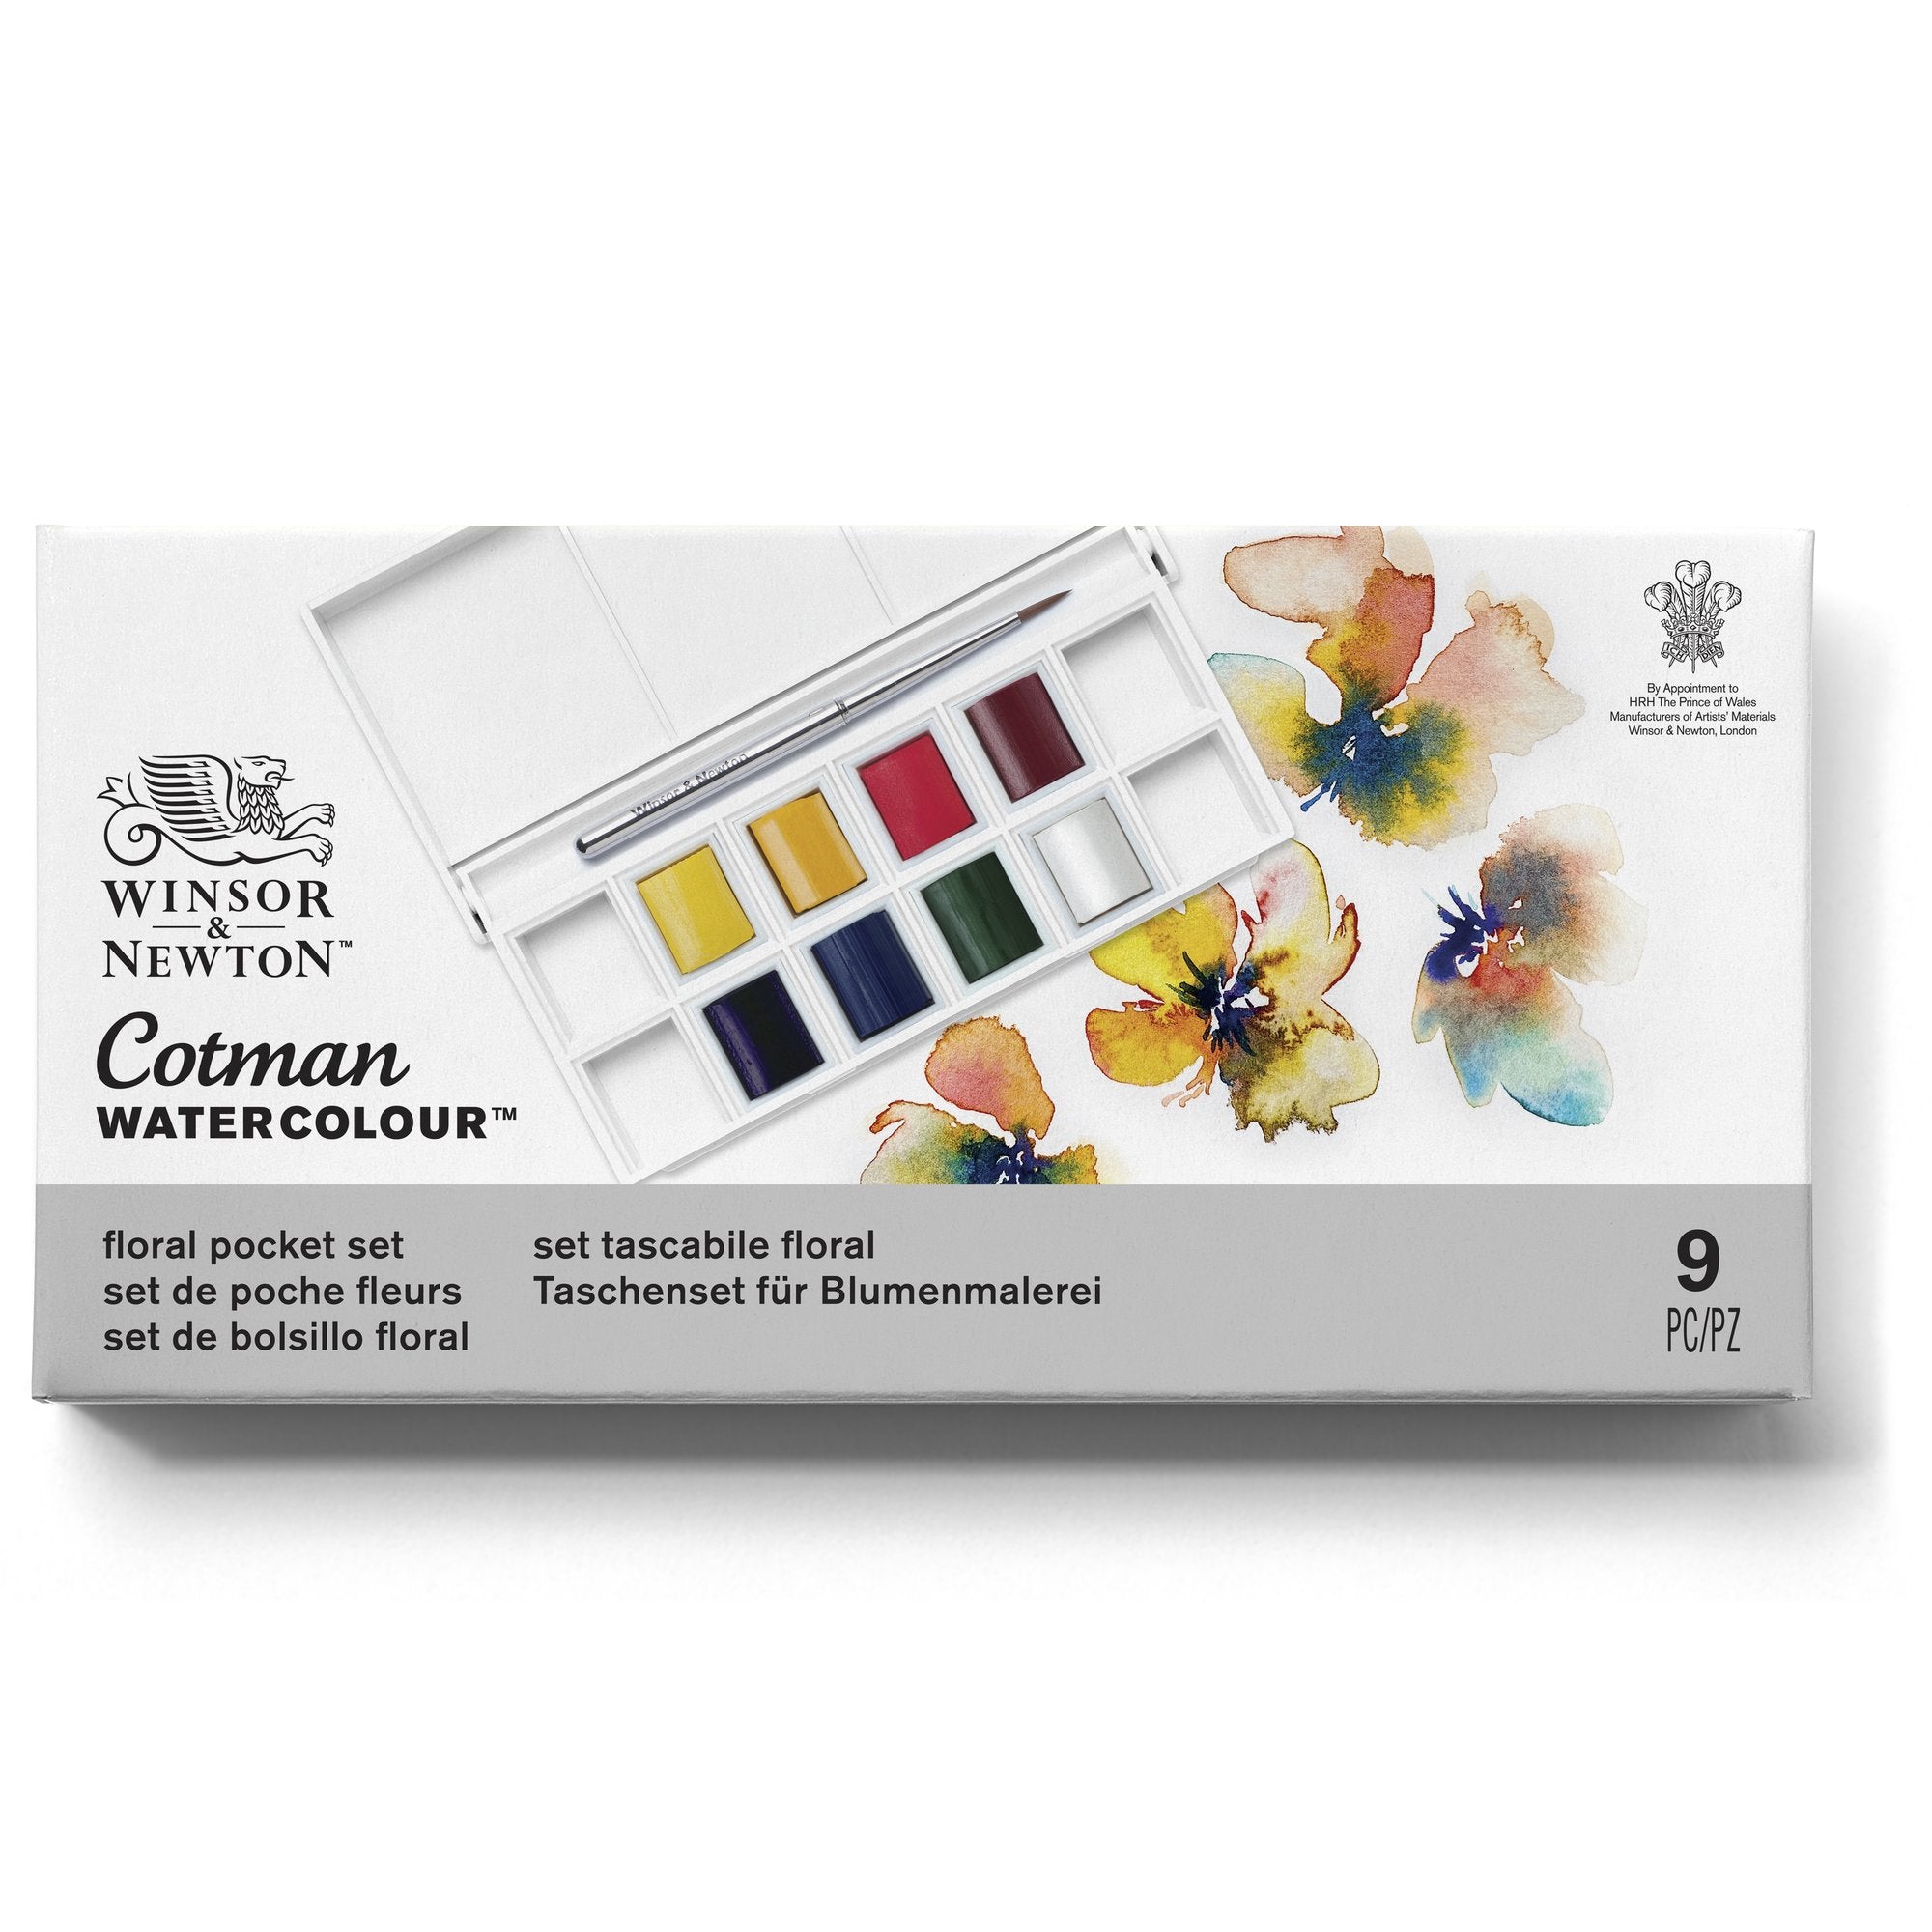 Winsor & Newton Cotman Watercolour FLORAL Pocket Set